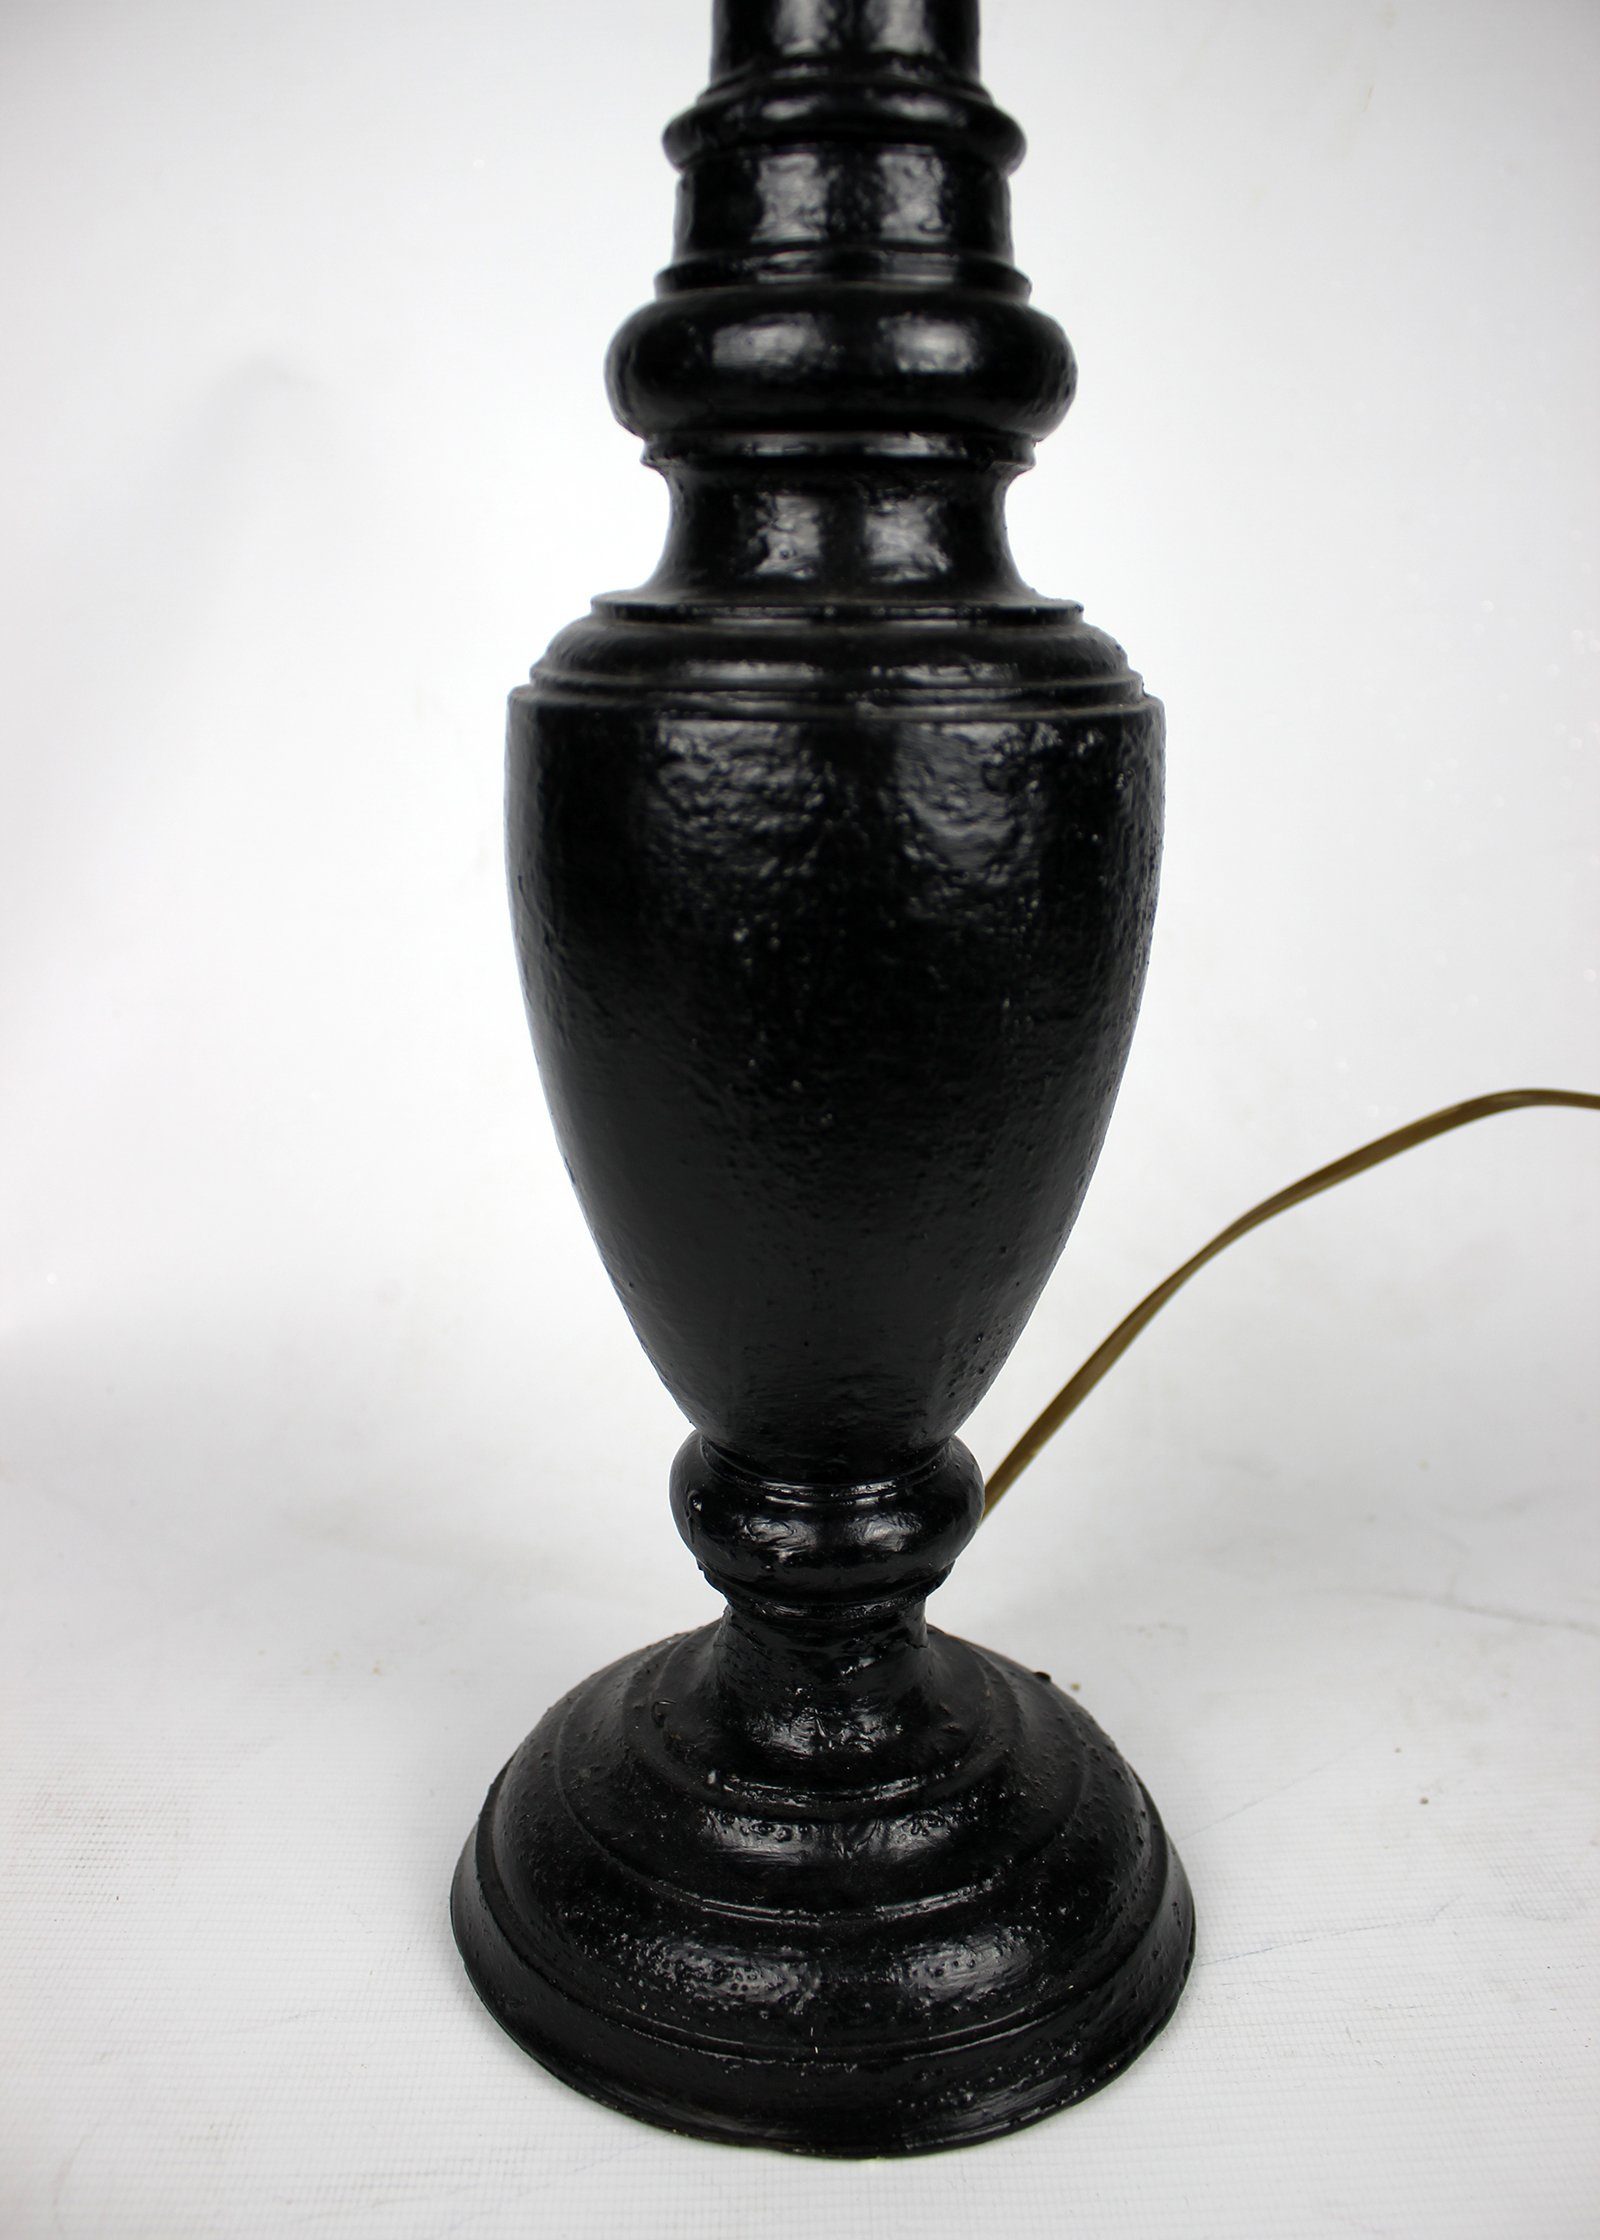 Tischleuchte gedrechselt lackiert Home schmal Signature schwarz handgefertigt Collection in warmweiß, Tischlampe ohne Lampenschirm, Holz Leuchtmittel, Italien mit